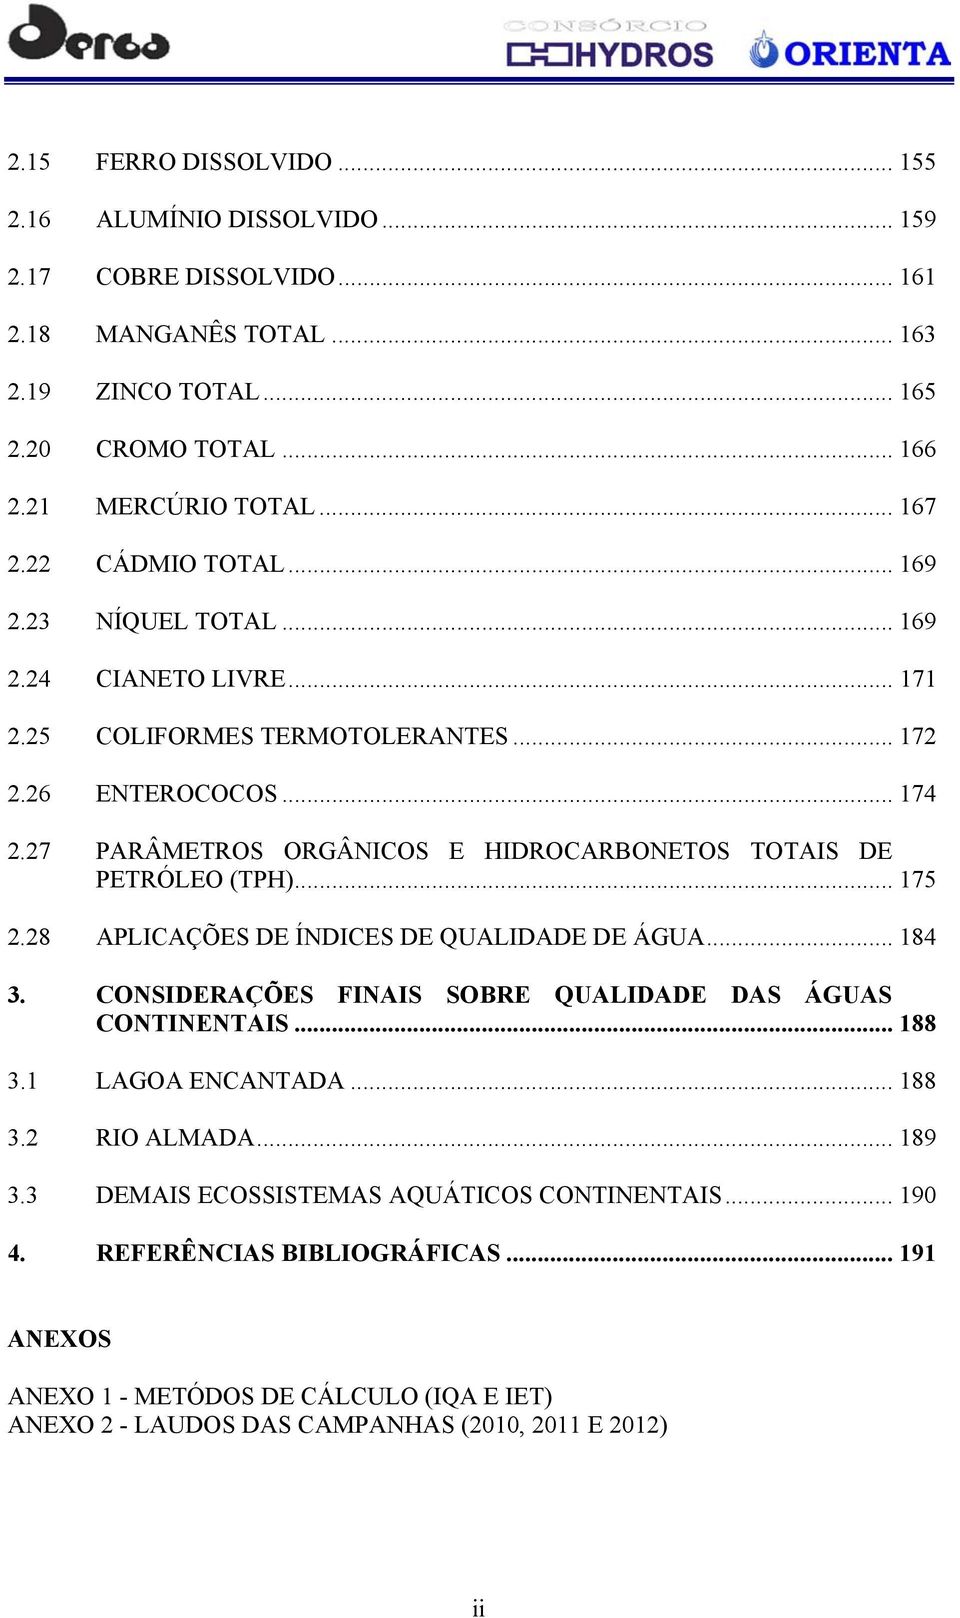 27 PARÂMETROS ORGÂNICOS E HIDROCARBONETOS TOTAIS DE PETRÓLEO (TPH)... 175 2.28 APLICAÇÕES DE ÍNDICES DE QUALIDADE DE ÁGUA... 184 3. CONSIDERAÇÕES FINAIS SOBRE QUALIDADE DAS ÁGUAS CONTINENTAIS.